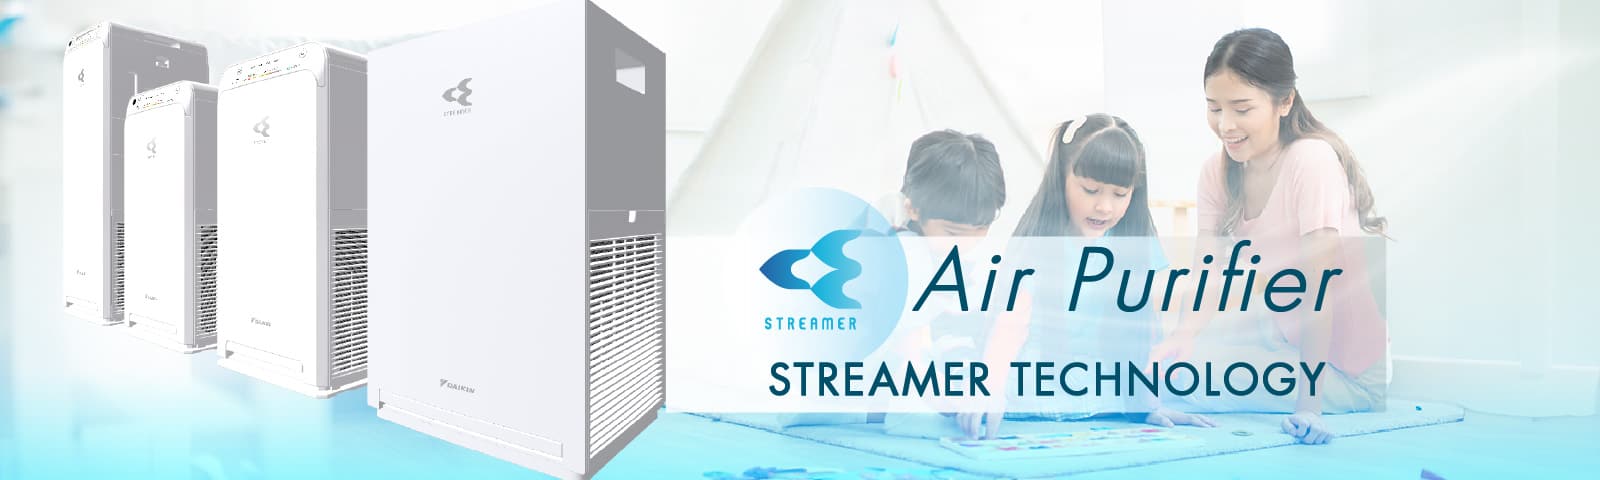 Air Purifier Aircon Streamer Technology